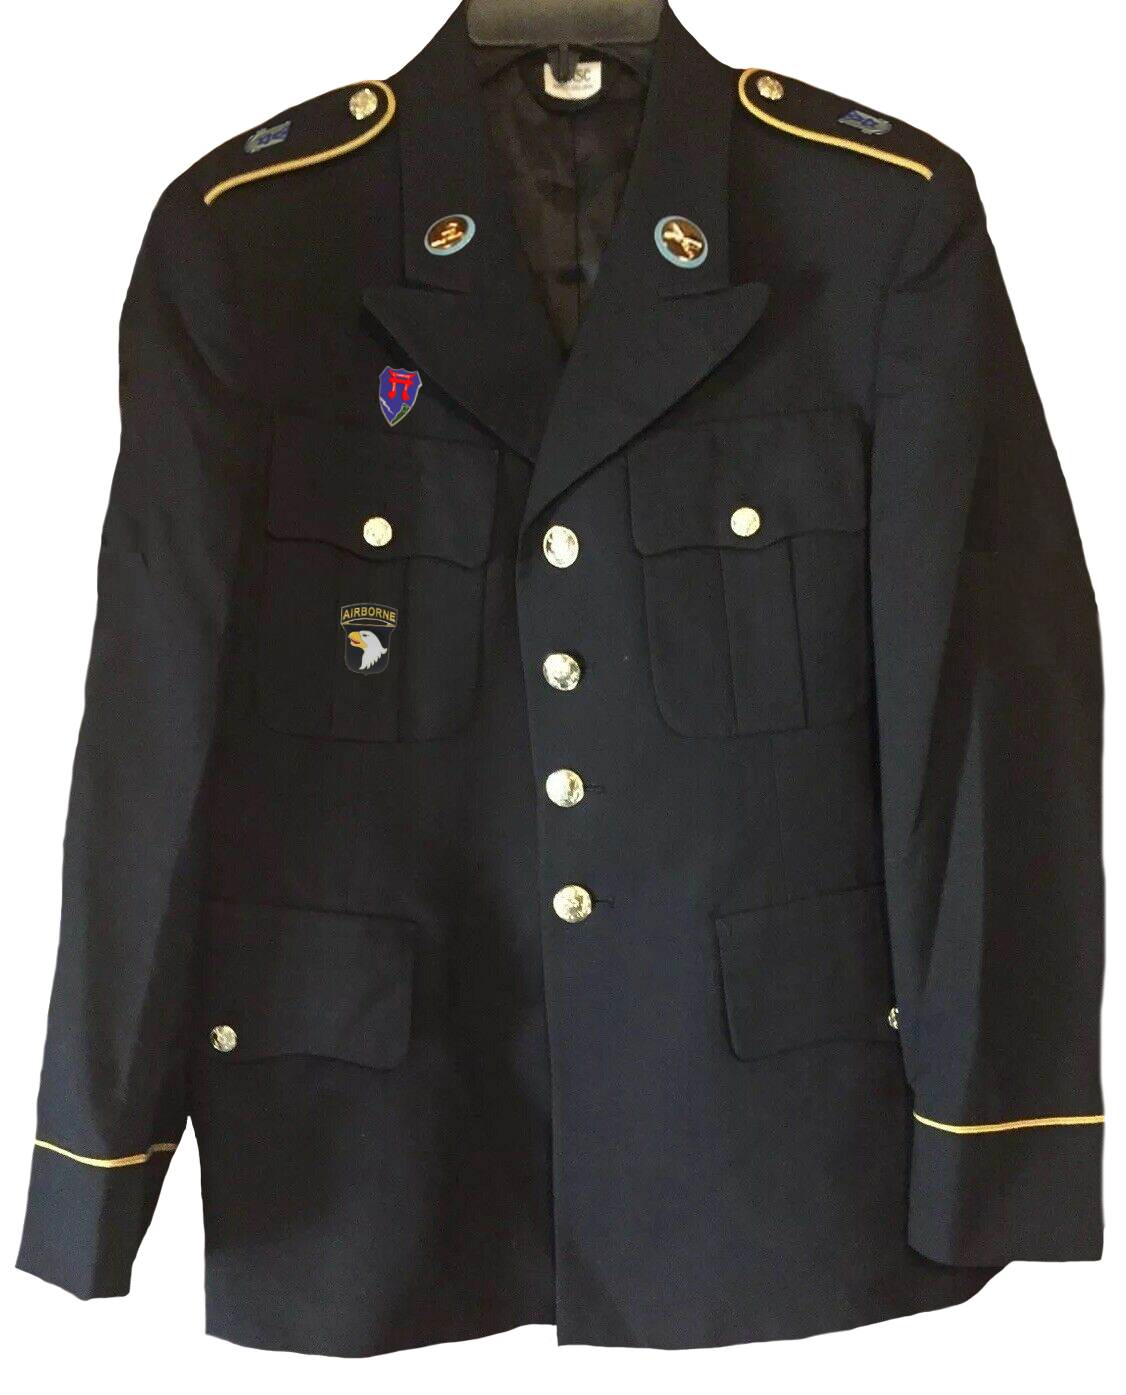 Die Uniform von Philipp